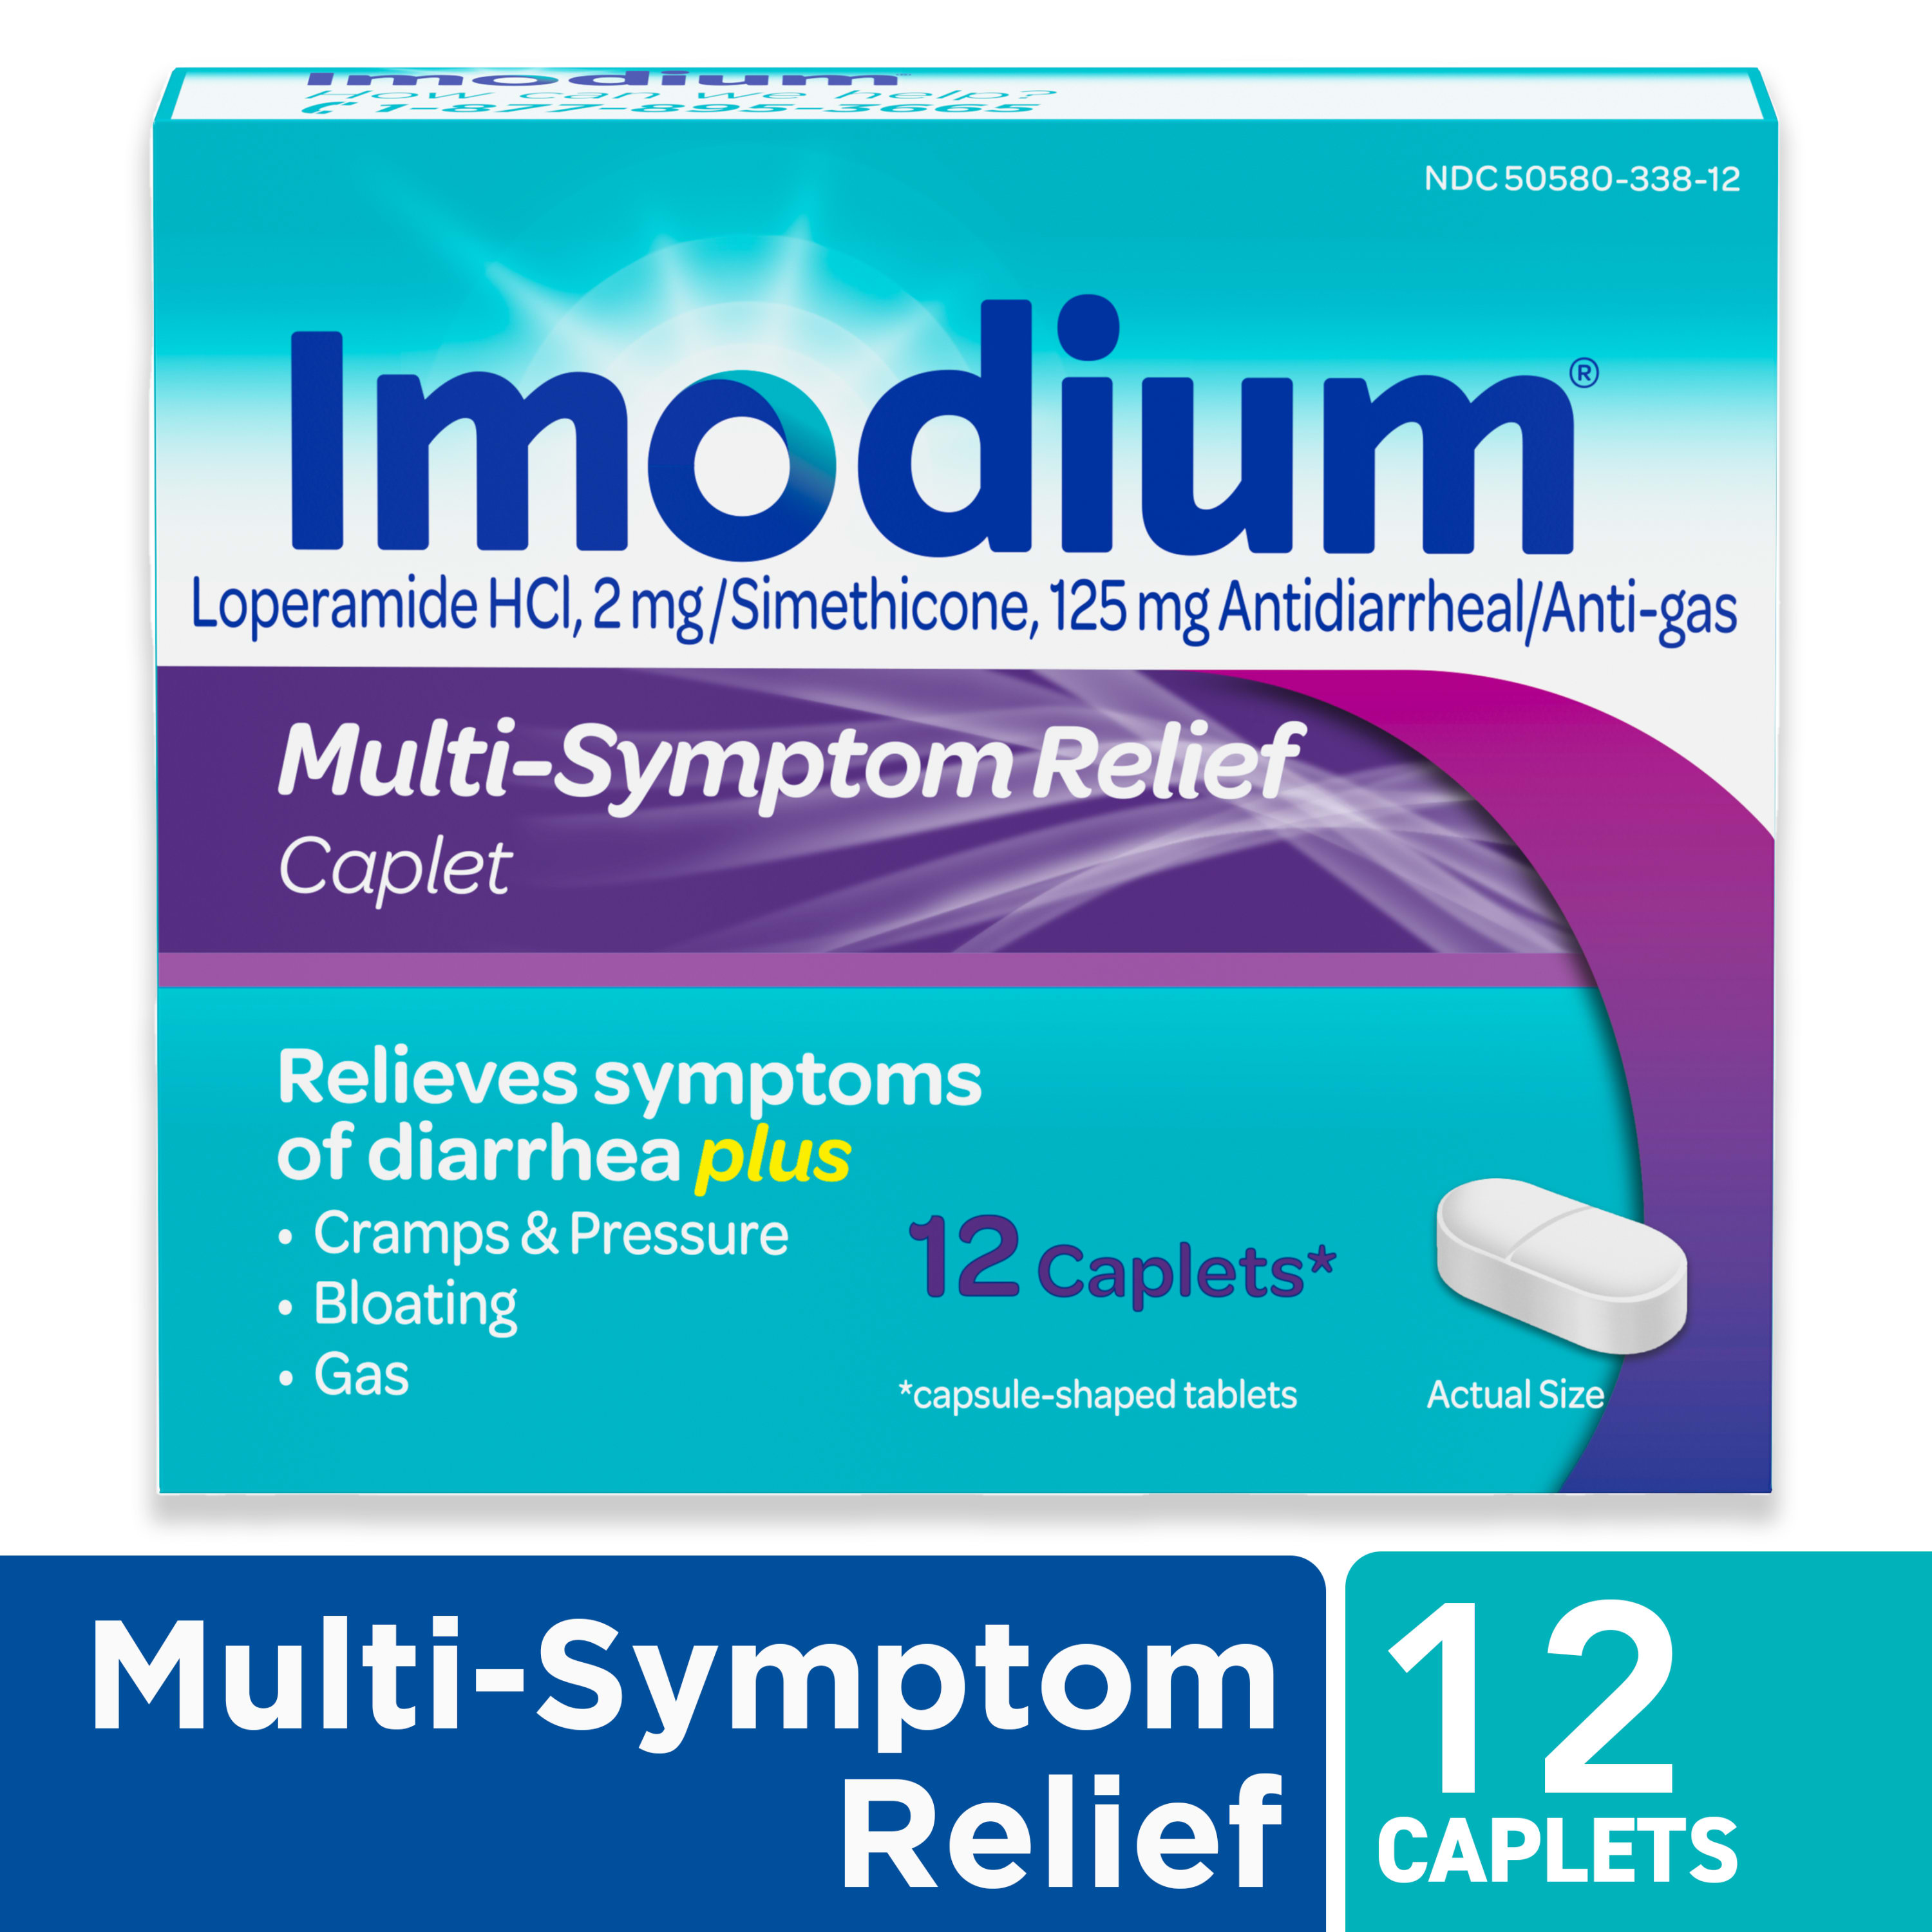 Imodium Multi-Symptom Relief Anti-Diarrheal Medicine Caplets, 12 ct. - image 1 of 13